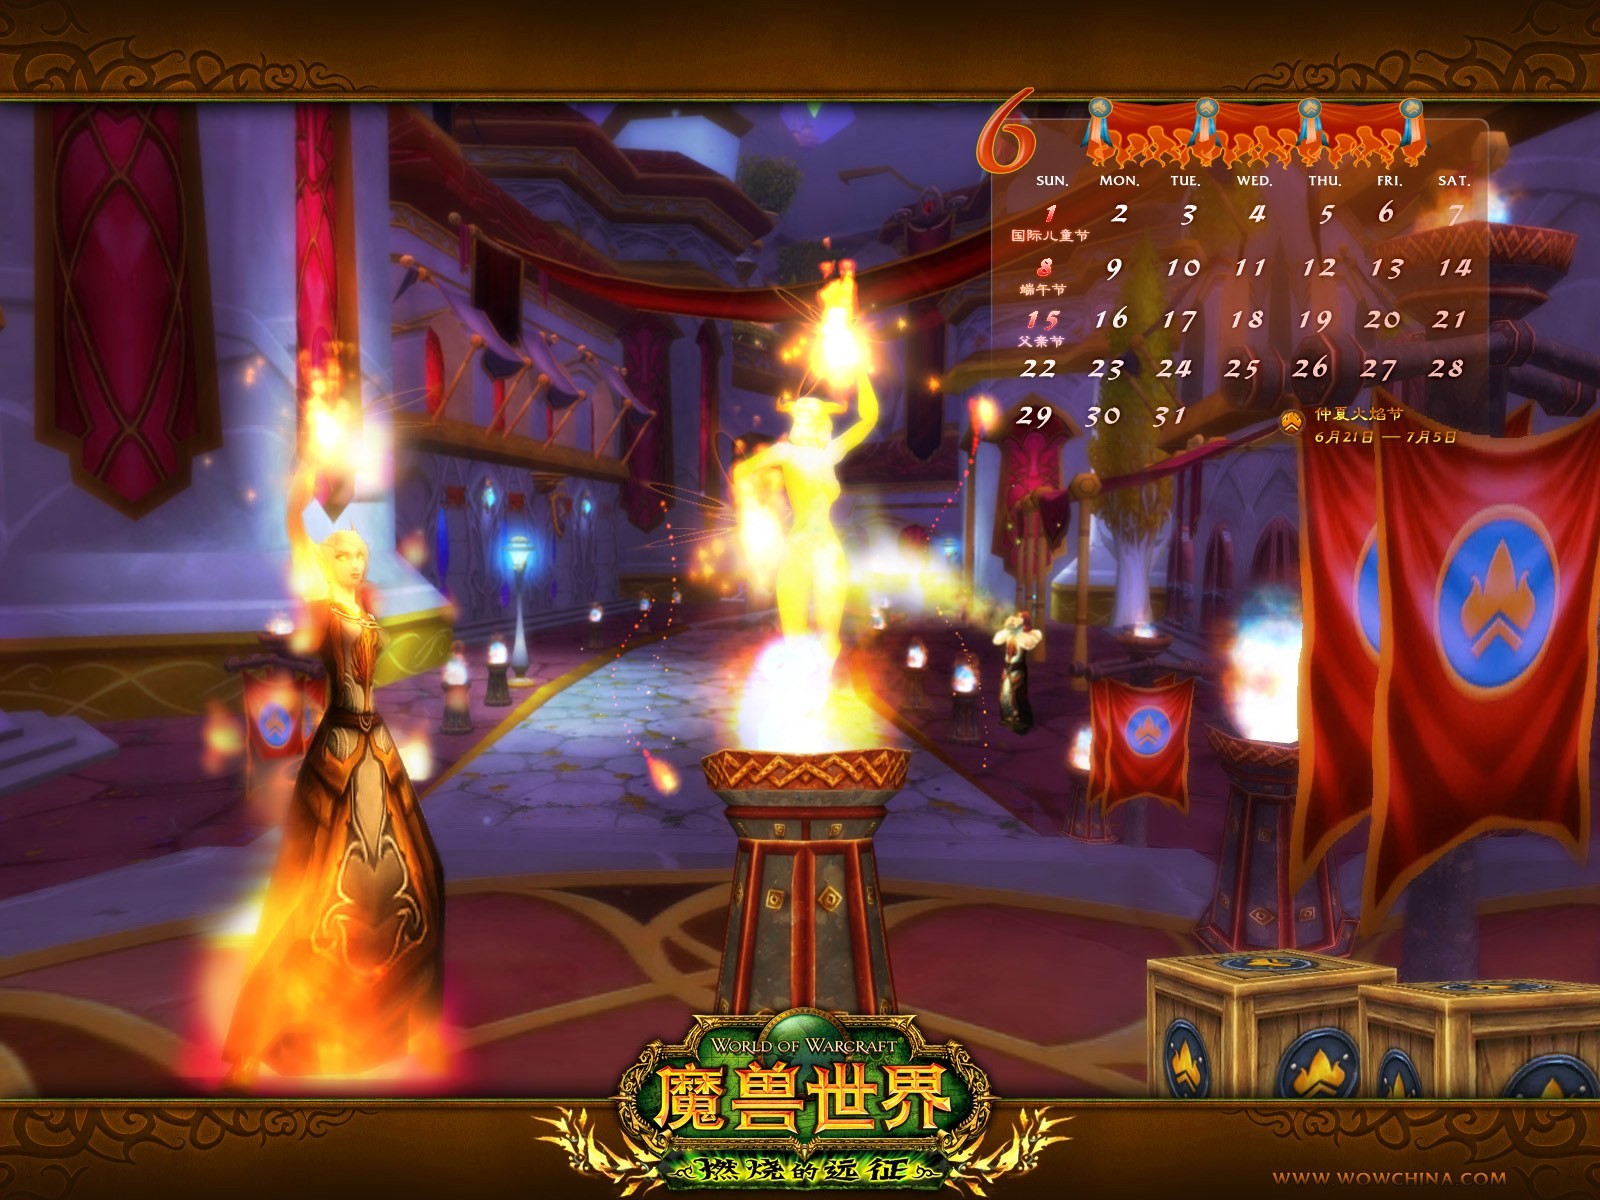 Мир Warcraft: официальные обои The Burning Crusade в (2) #24 - 1600x1200